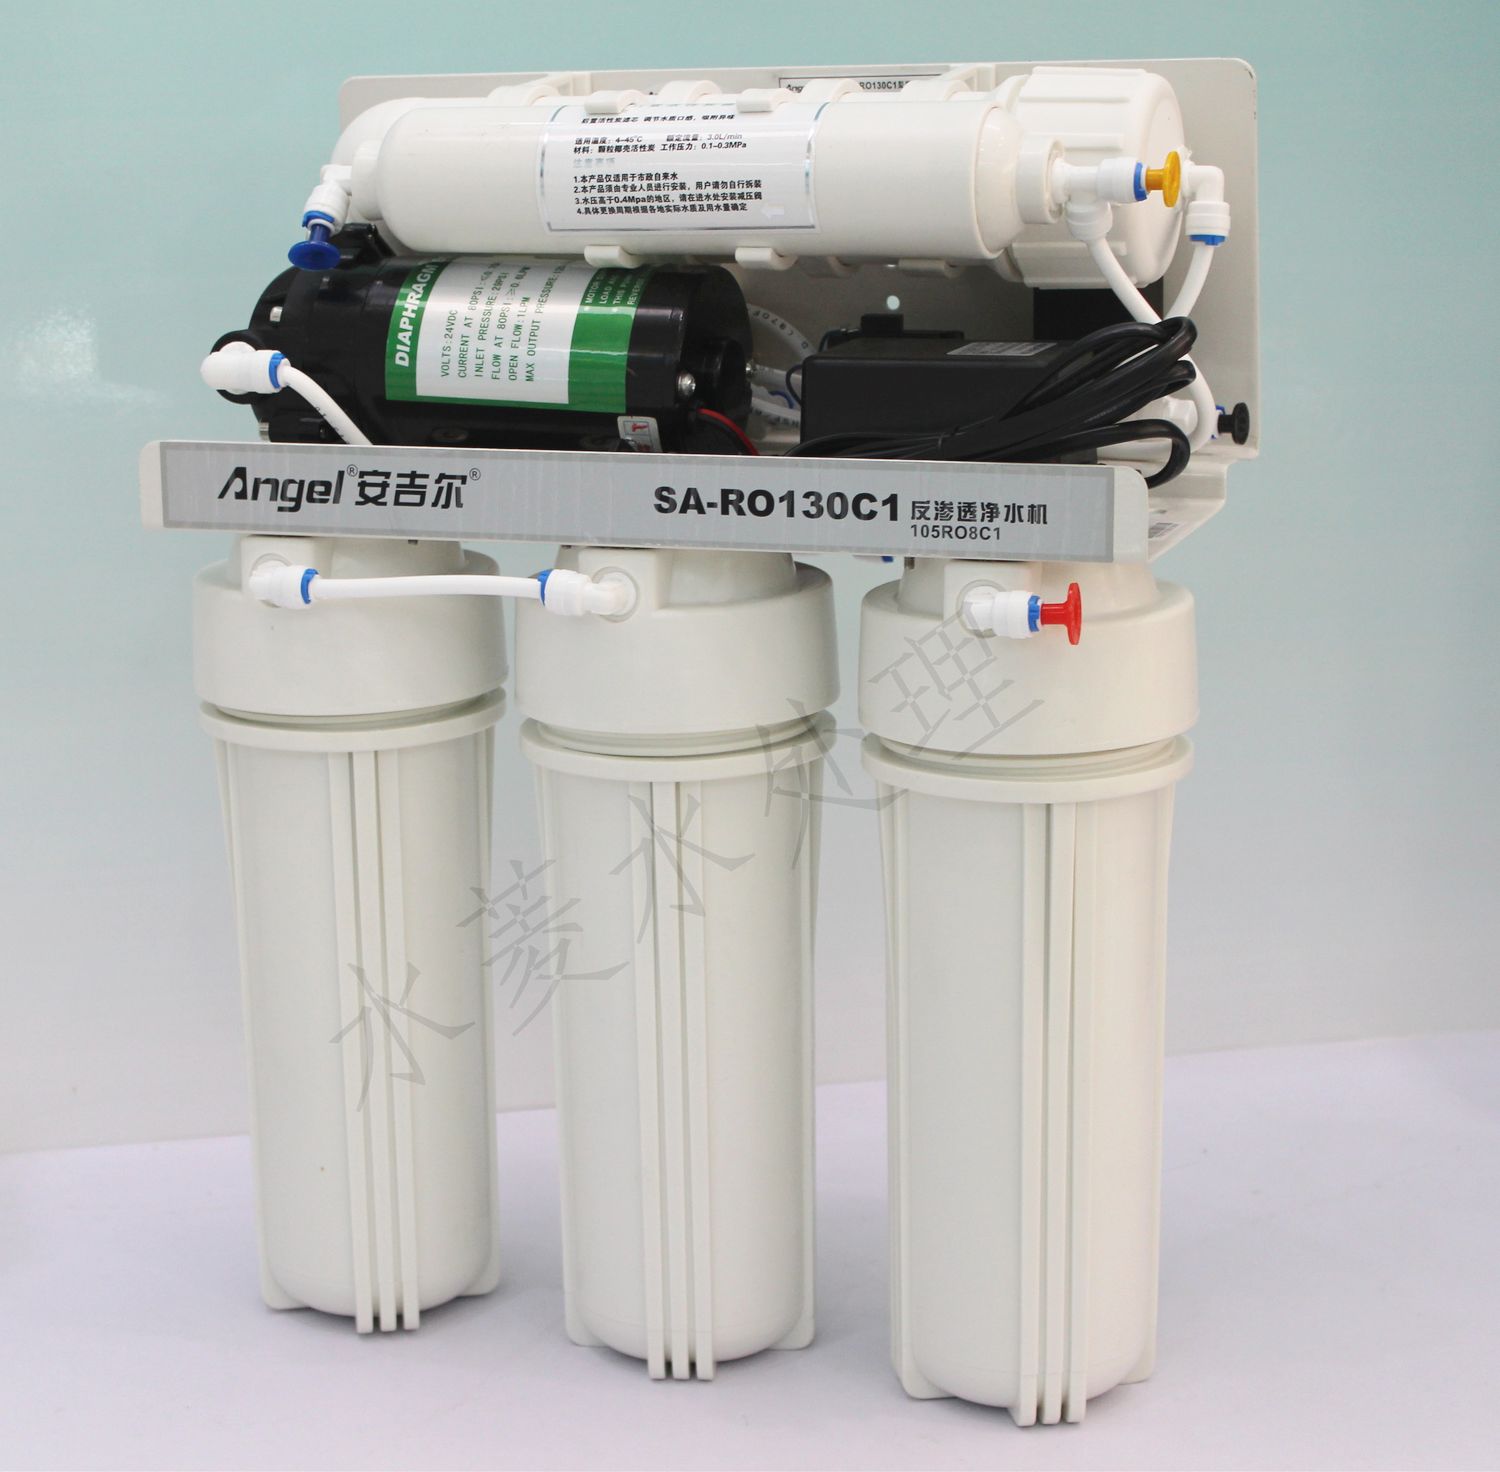 安吉尔净水器过滤机SA-RO130 105RO8C1反渗透纯水机 直饮机折扣优惠信息